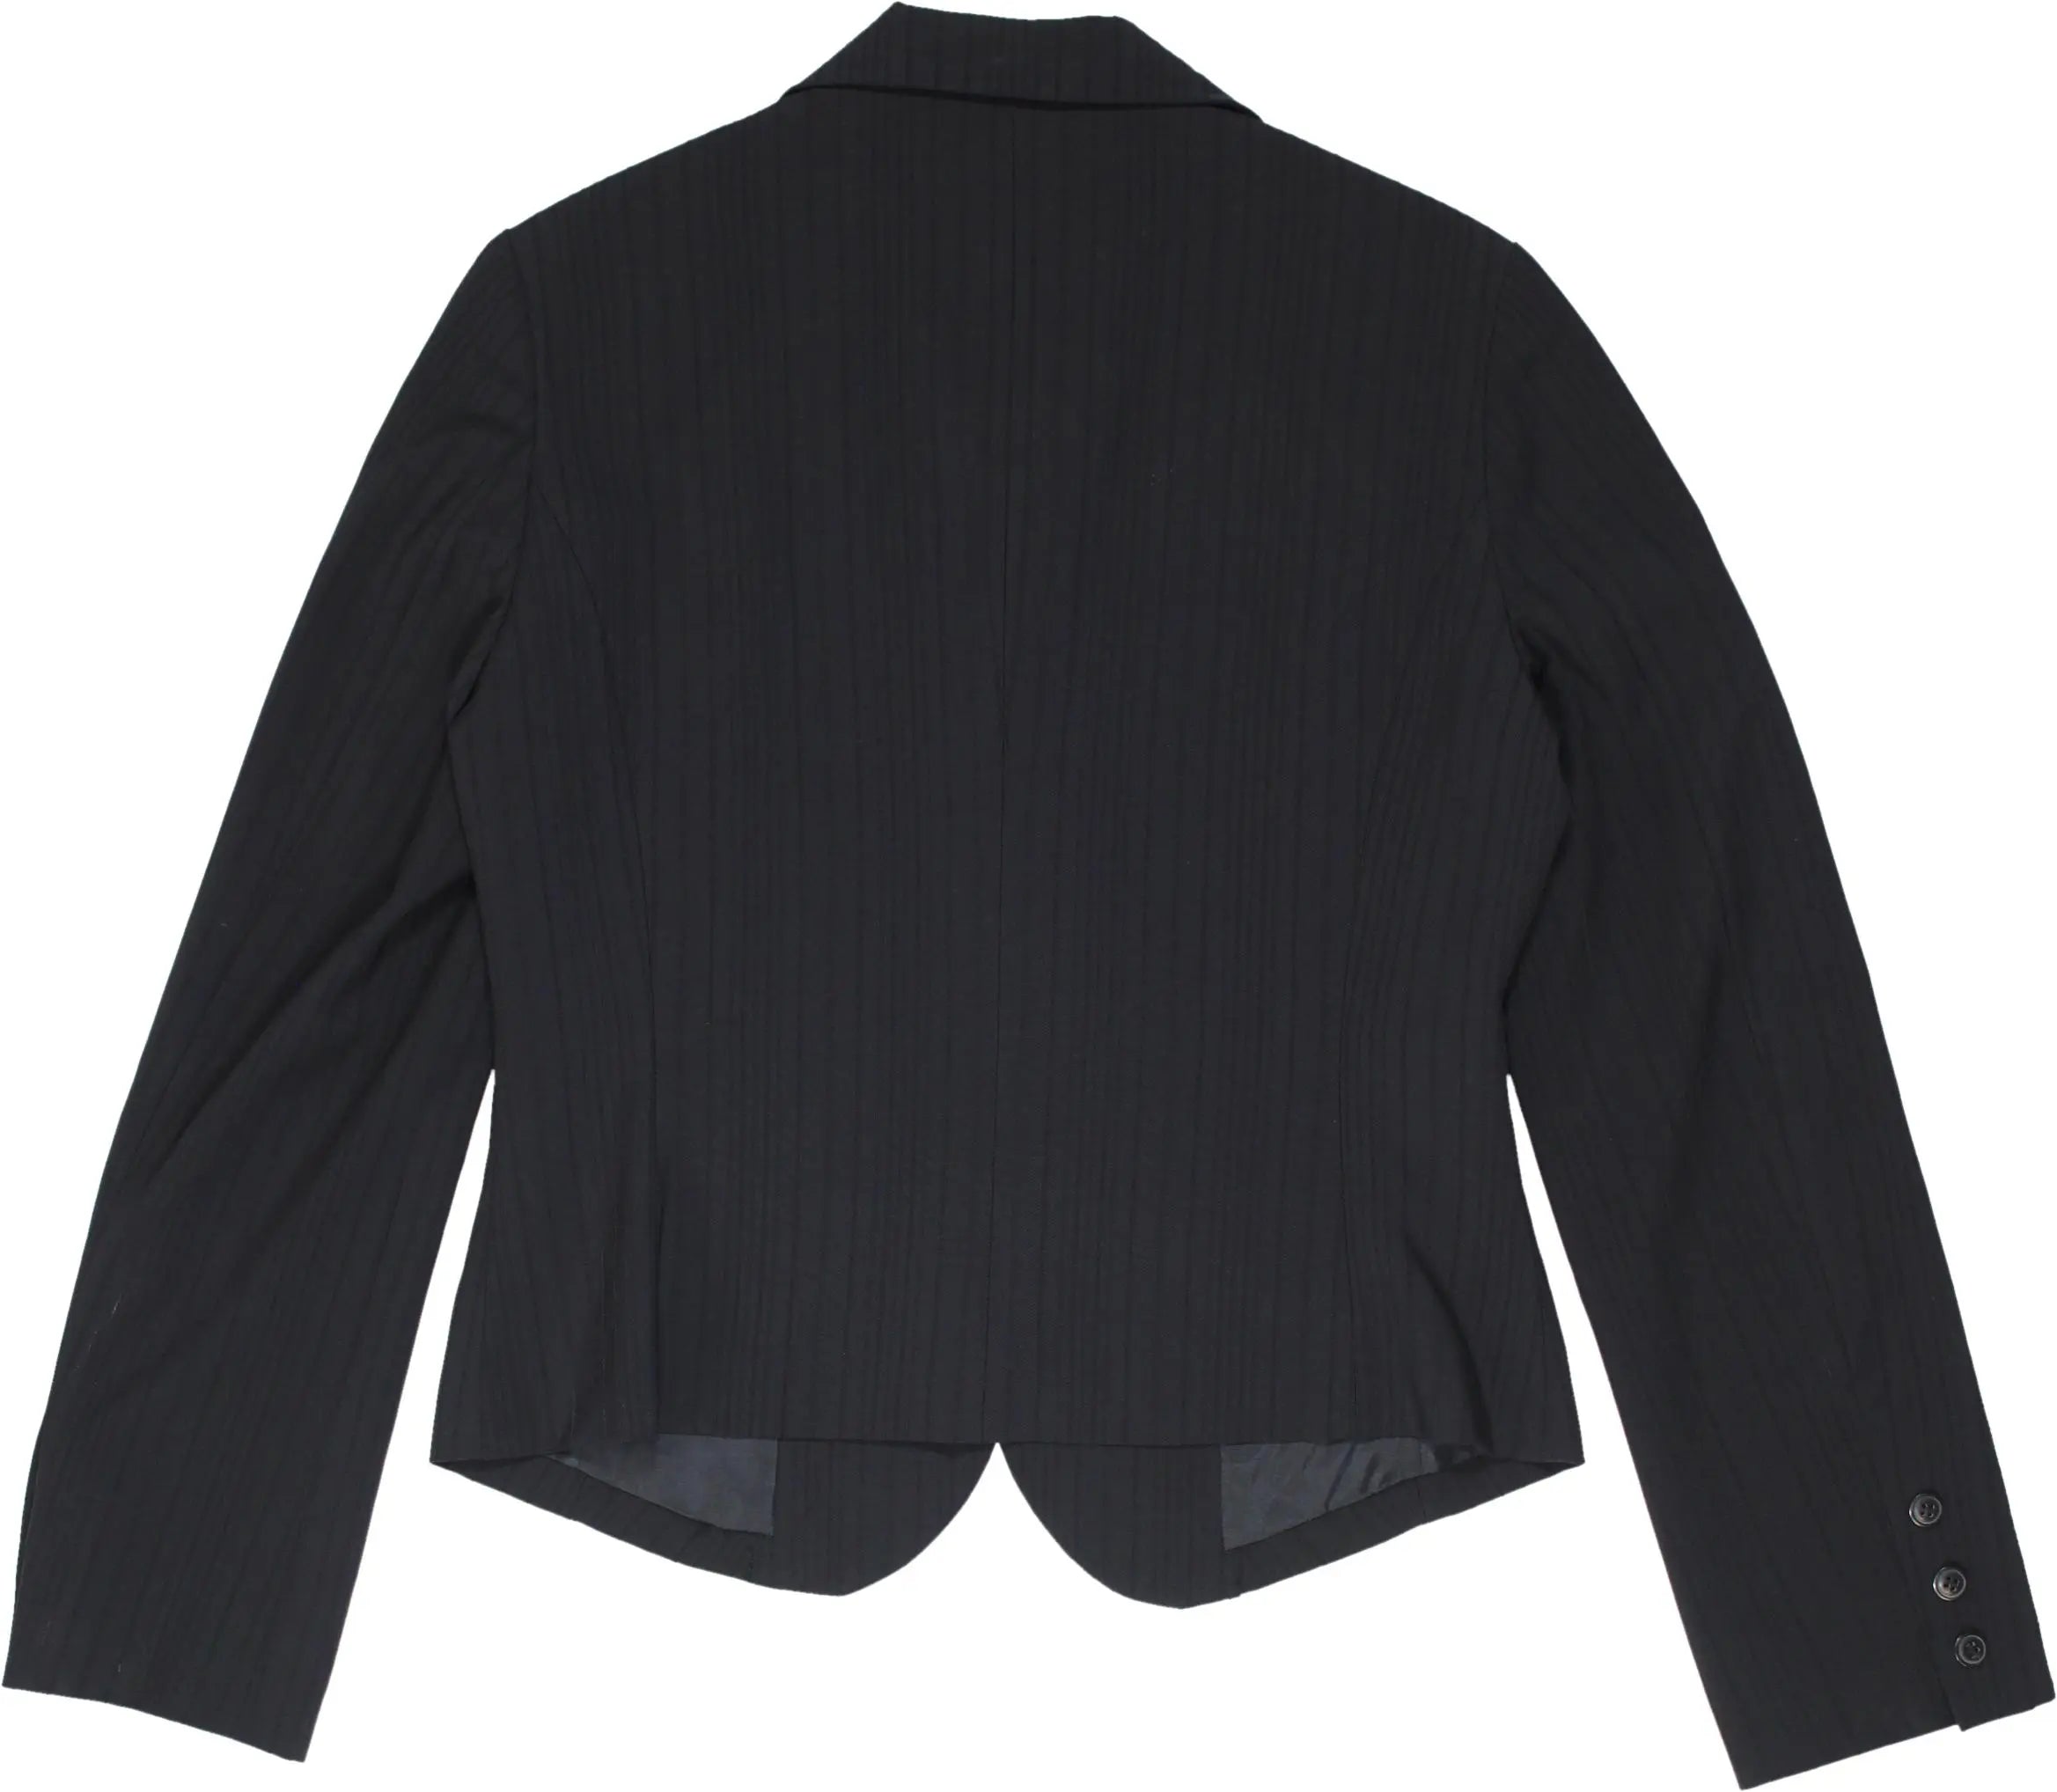 Naf Naf - Black blazer- ThriftTale.com - Vintage and second handclothing